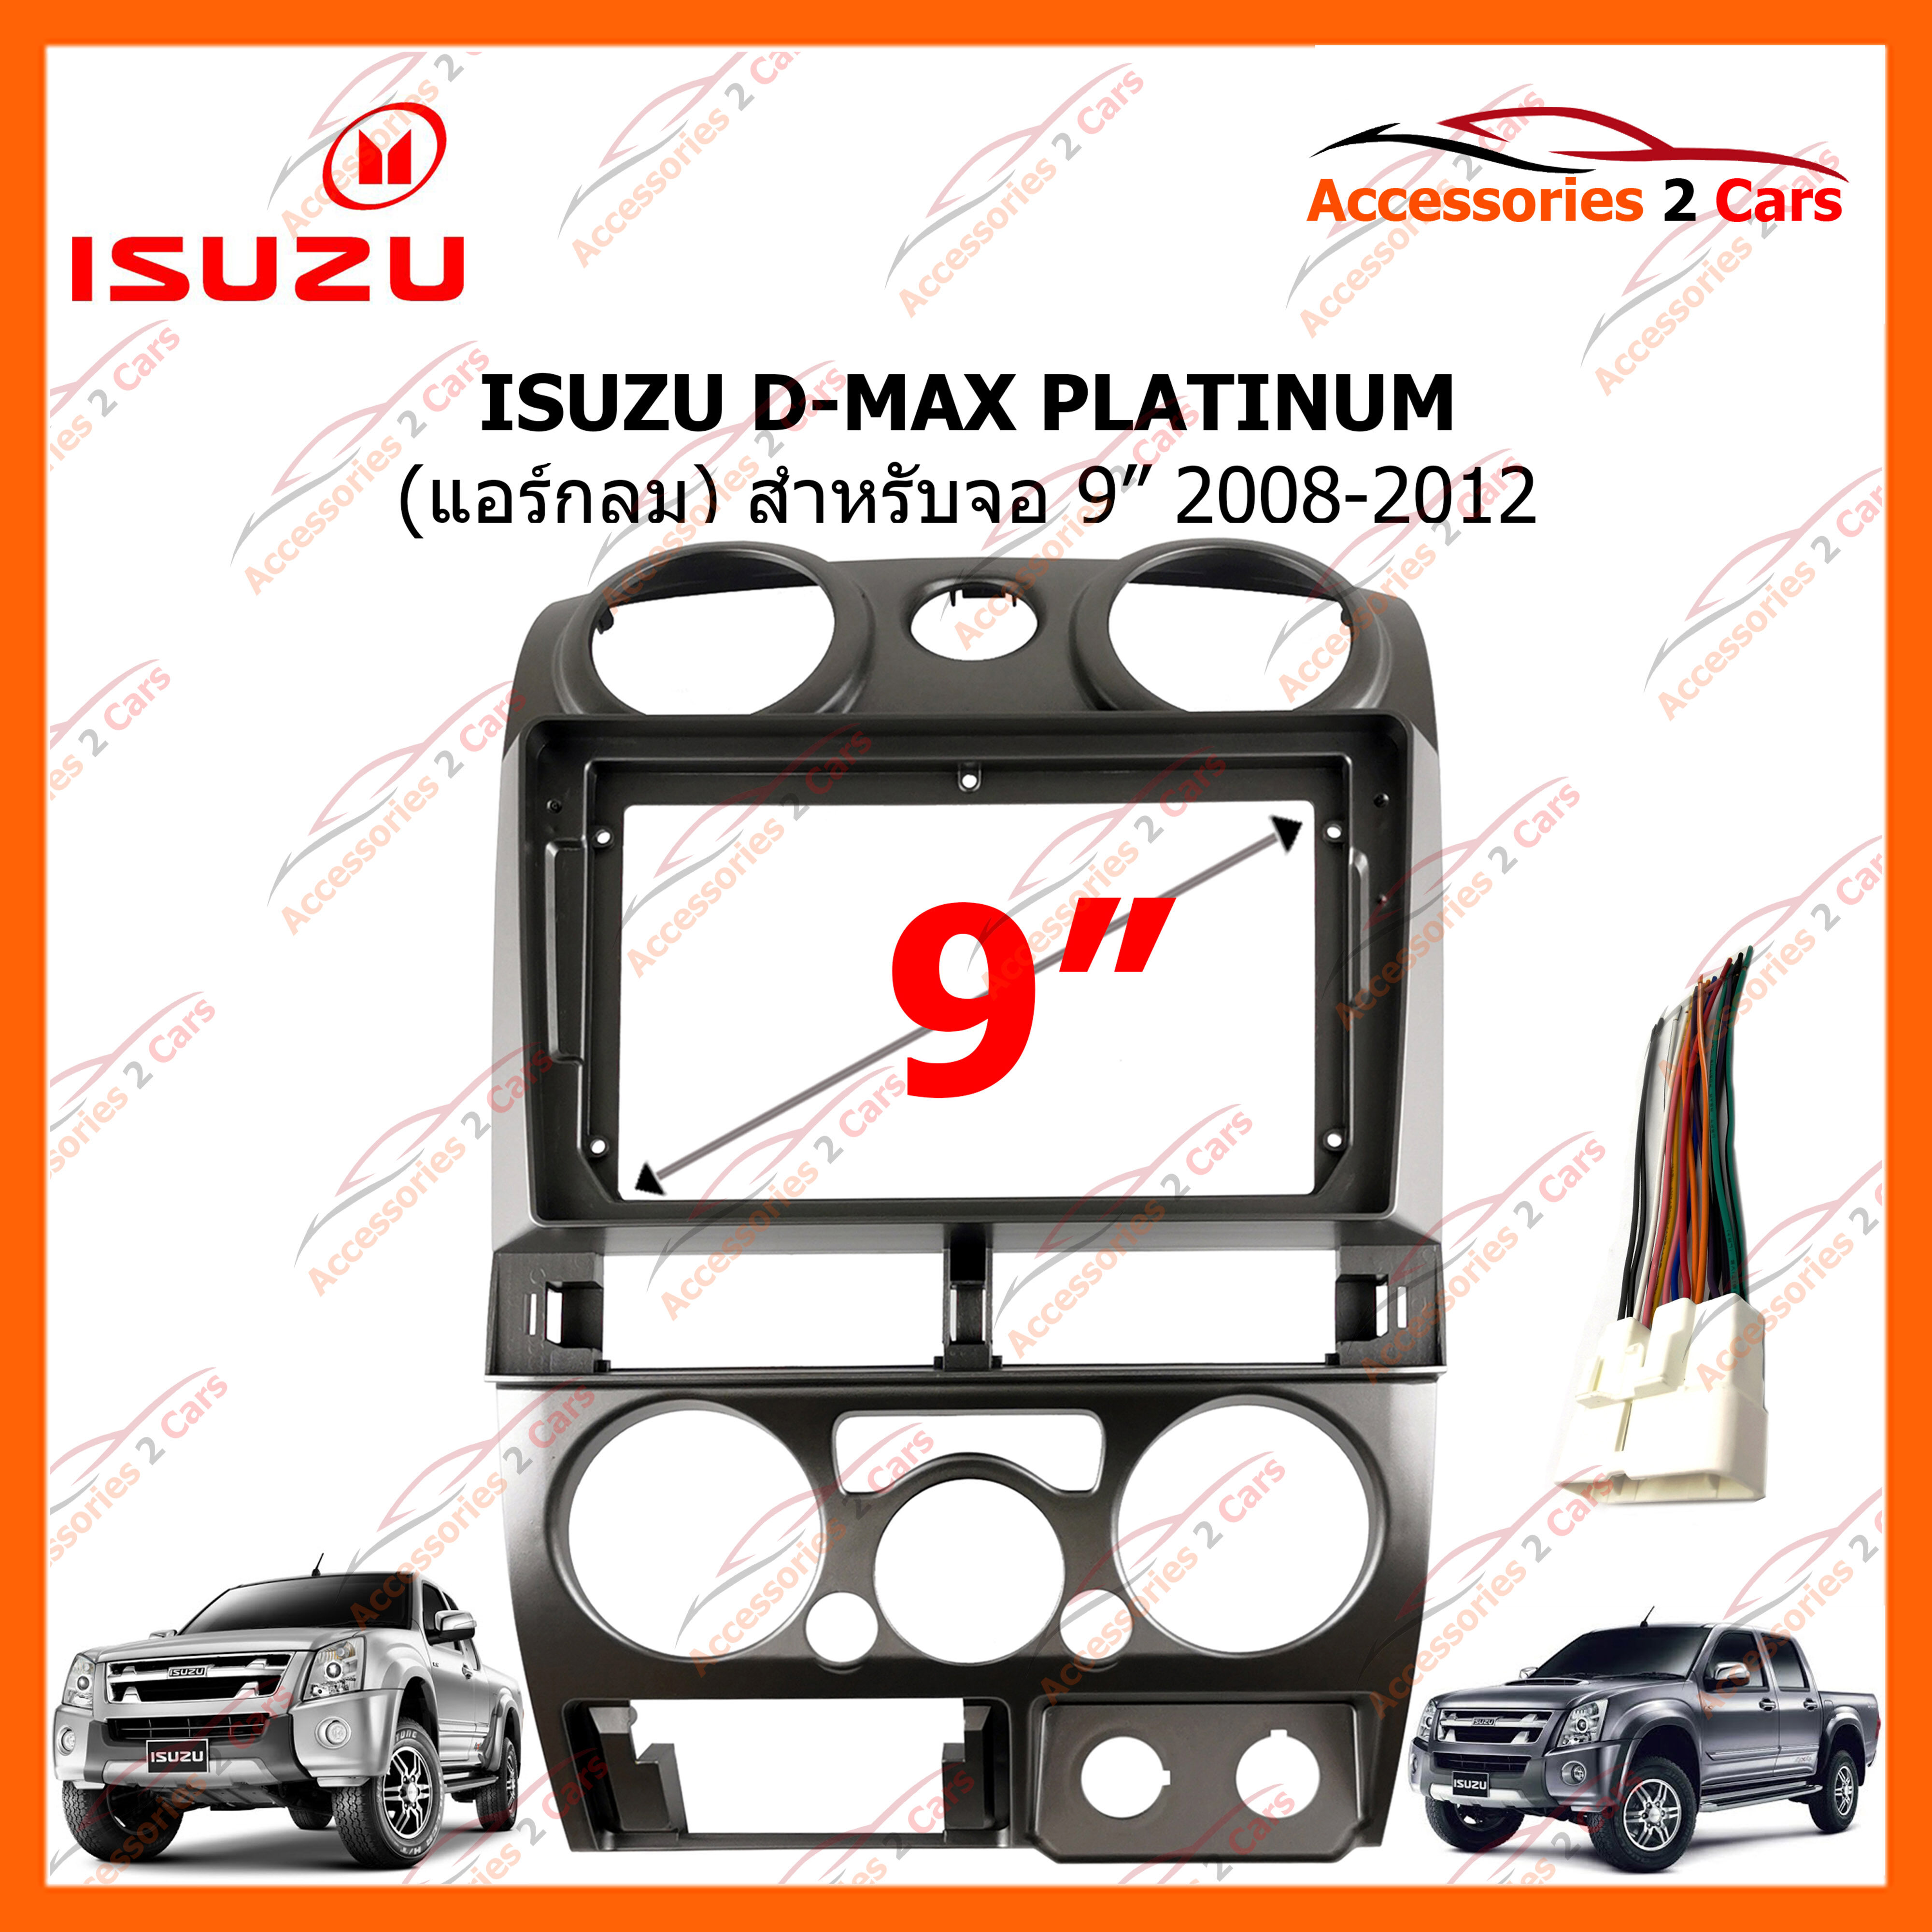 หน้ากากวิทยุรถยนต์ ISUZU D-MAX PLATINUM แอร์กลม จอ 9 นิ้ว 2008-2012 (IS-014N)